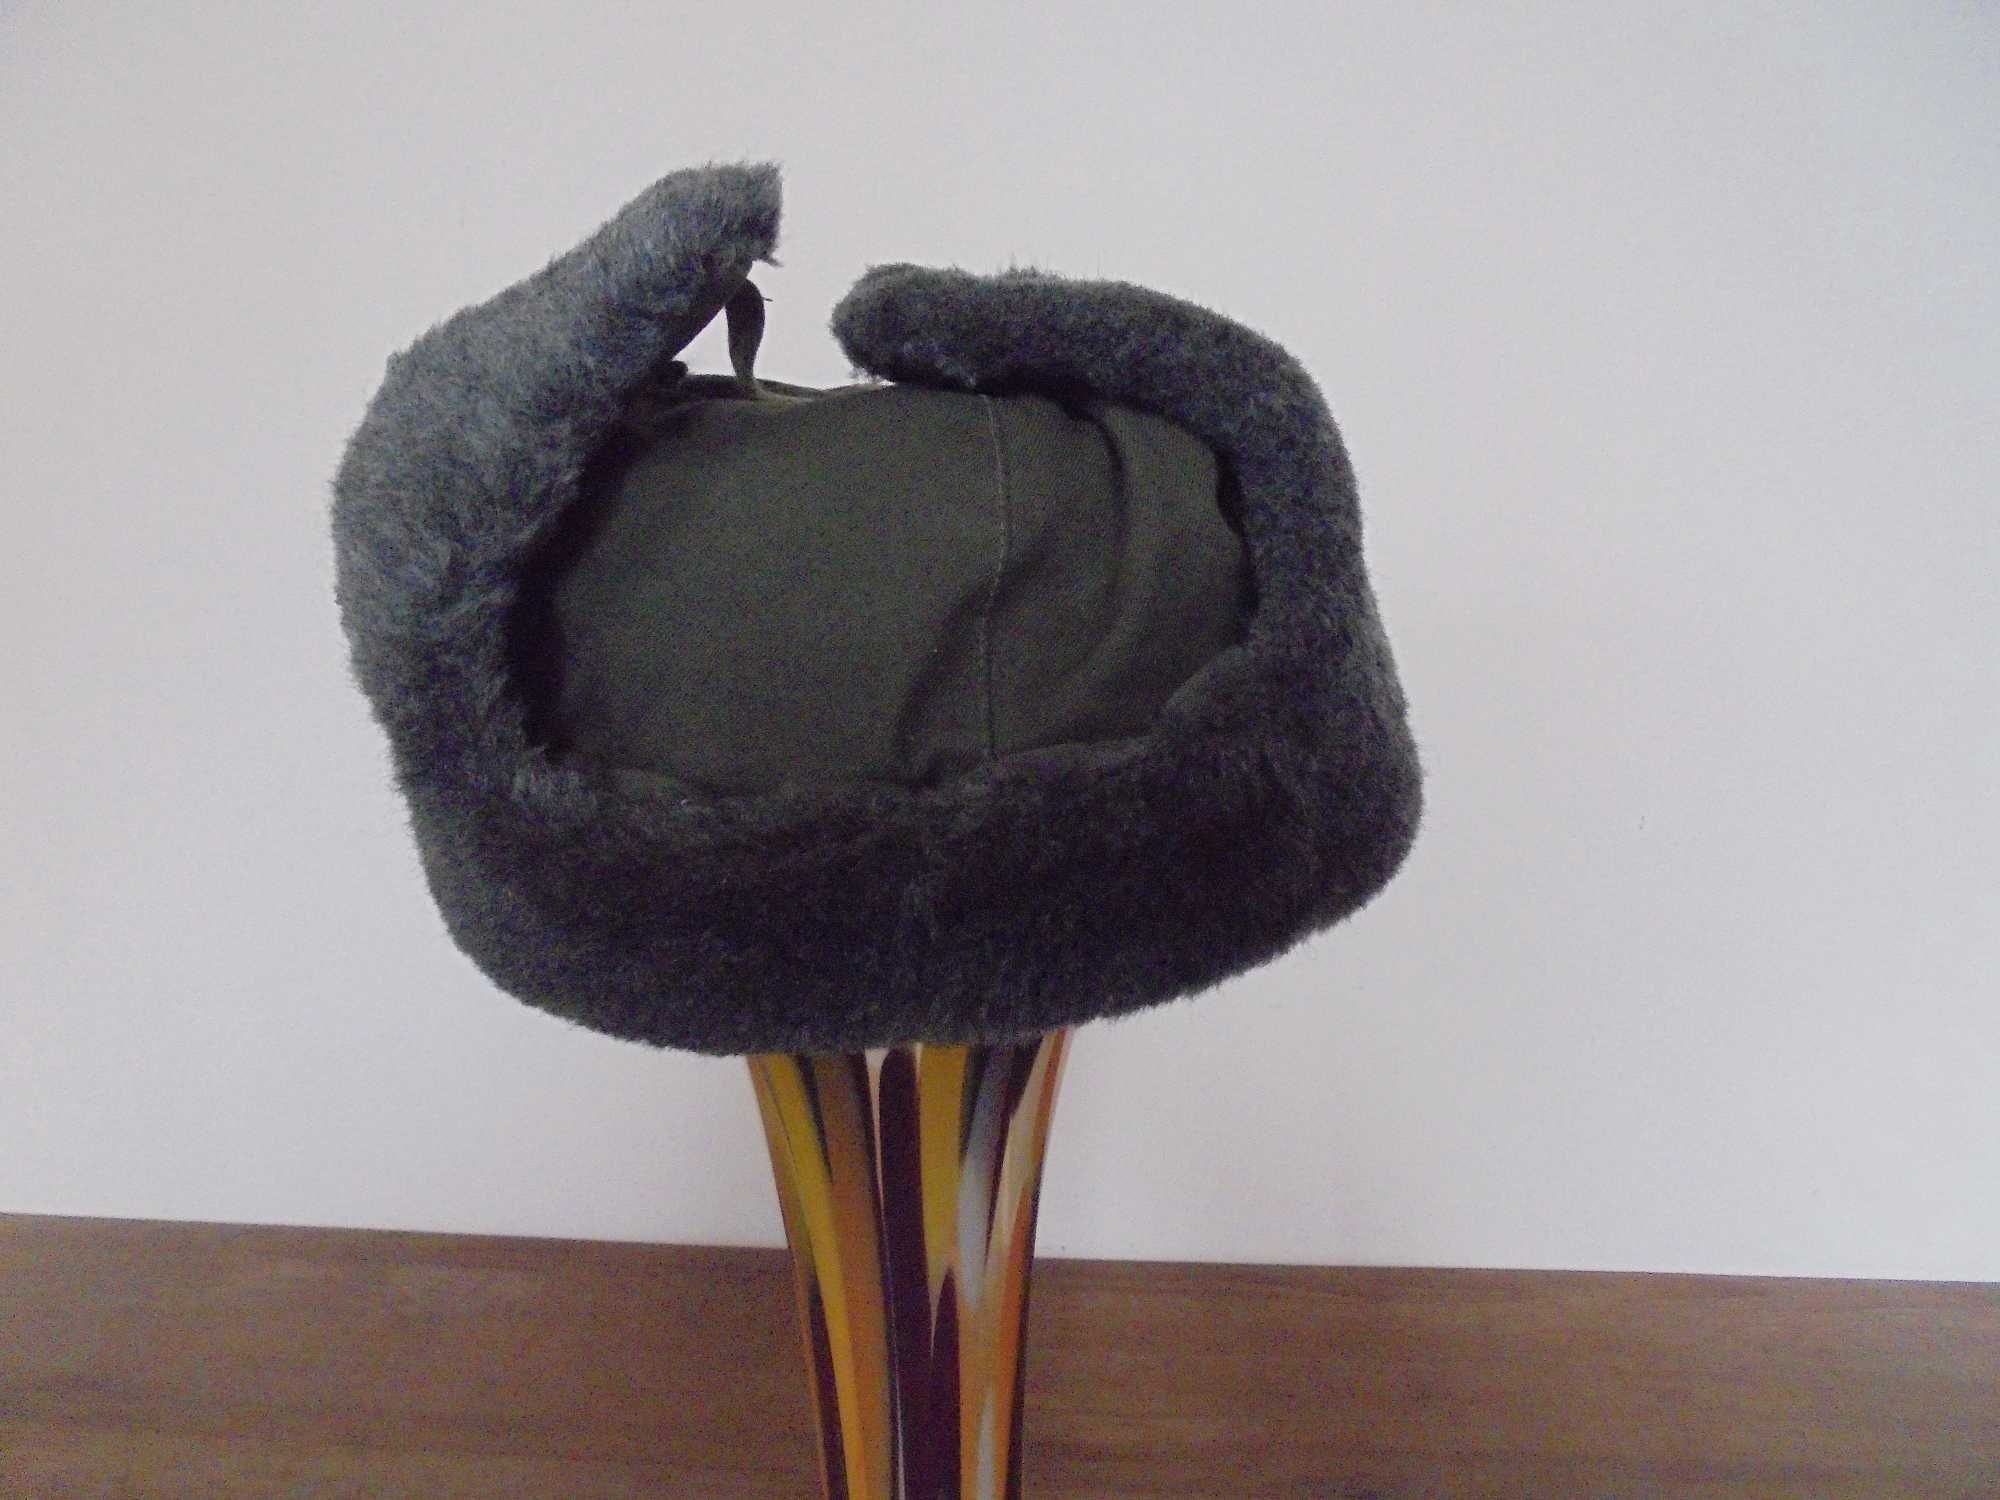 Rosyjska zimowa czapka wojskowa uszatka -uszanka nr9